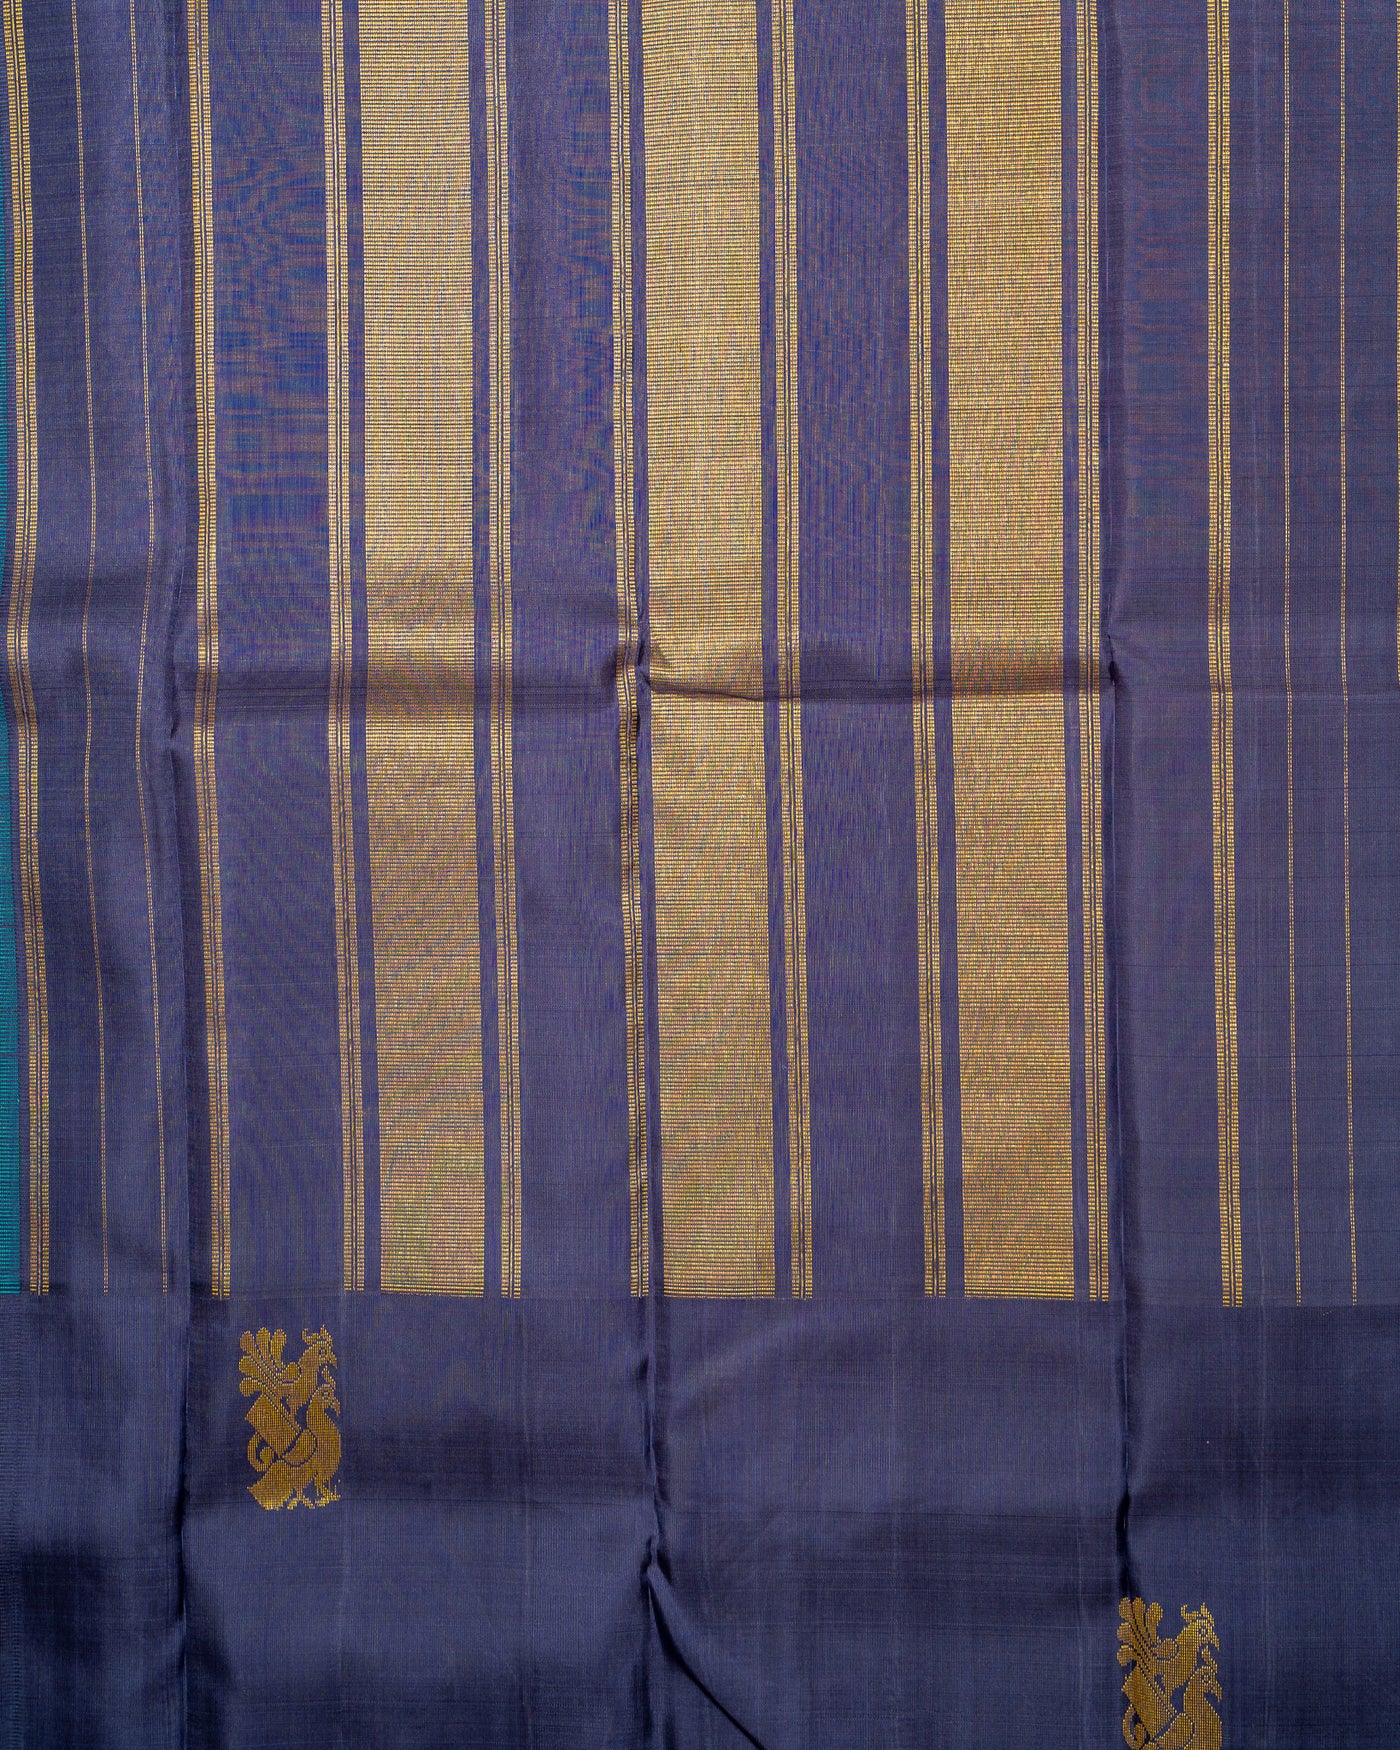 Sky Blue and Purple Korvai Kanjivaram Silk Sari - Clio Silks